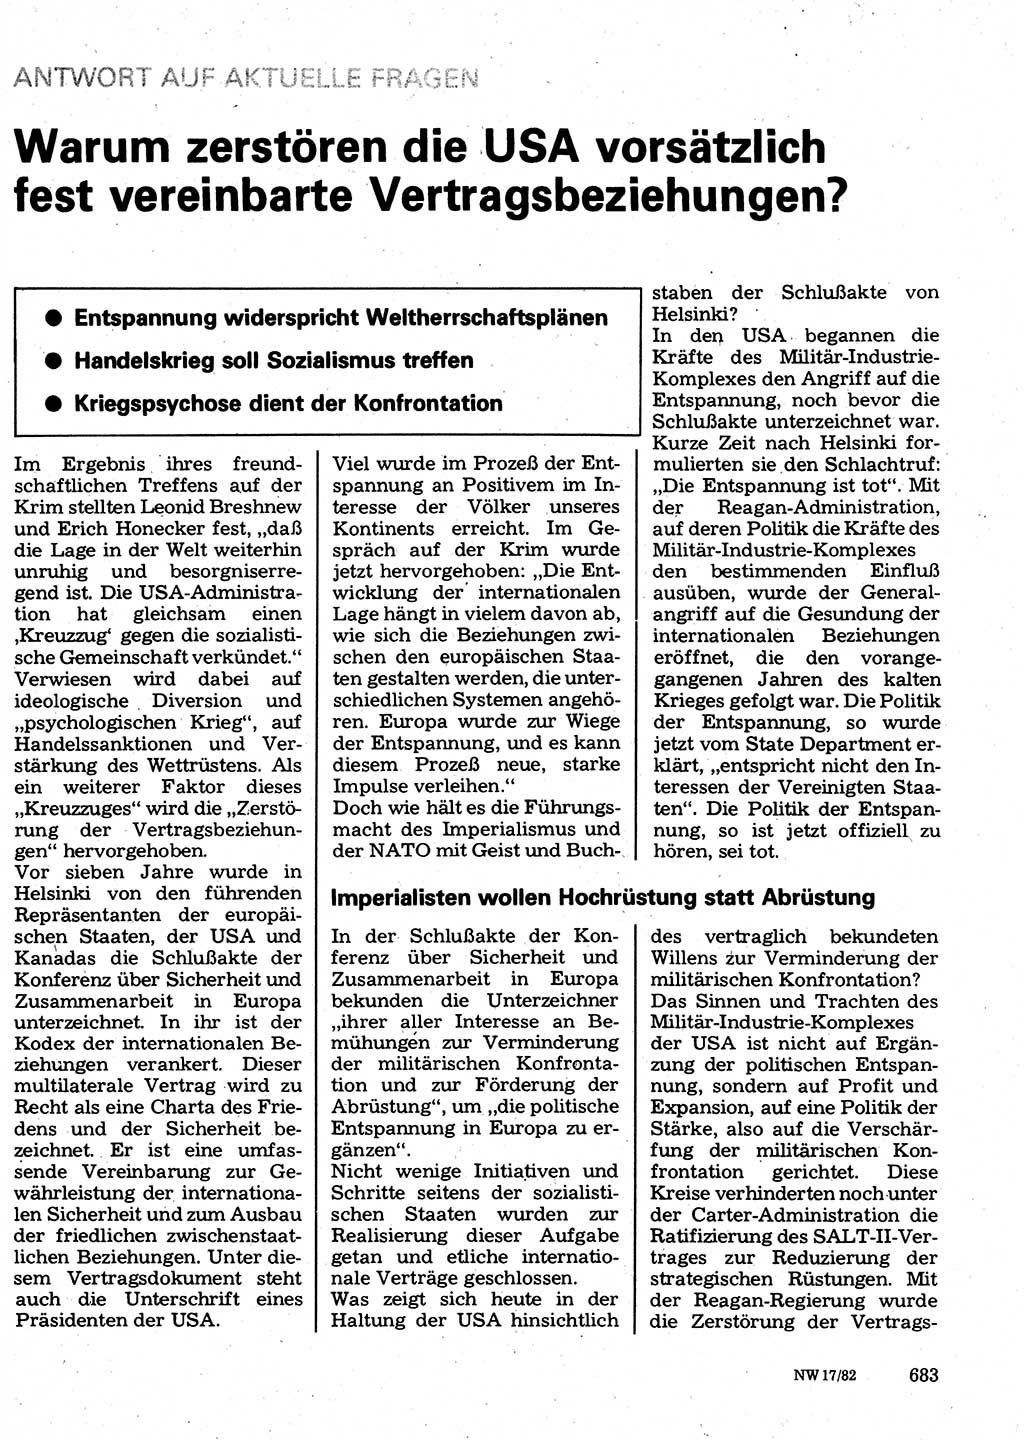 Neuer Weg (NW), Organ des Zentralkomitees (ZK) der SED (Sozialistische Einheitspartei Deutschlands) für Fragen des Parteilebens, 37. Jahrgang [Deutsche Demokratische Republik (DDR)] 1982, Seite 683 (NW ZK SED DDR 1982, S. 683)